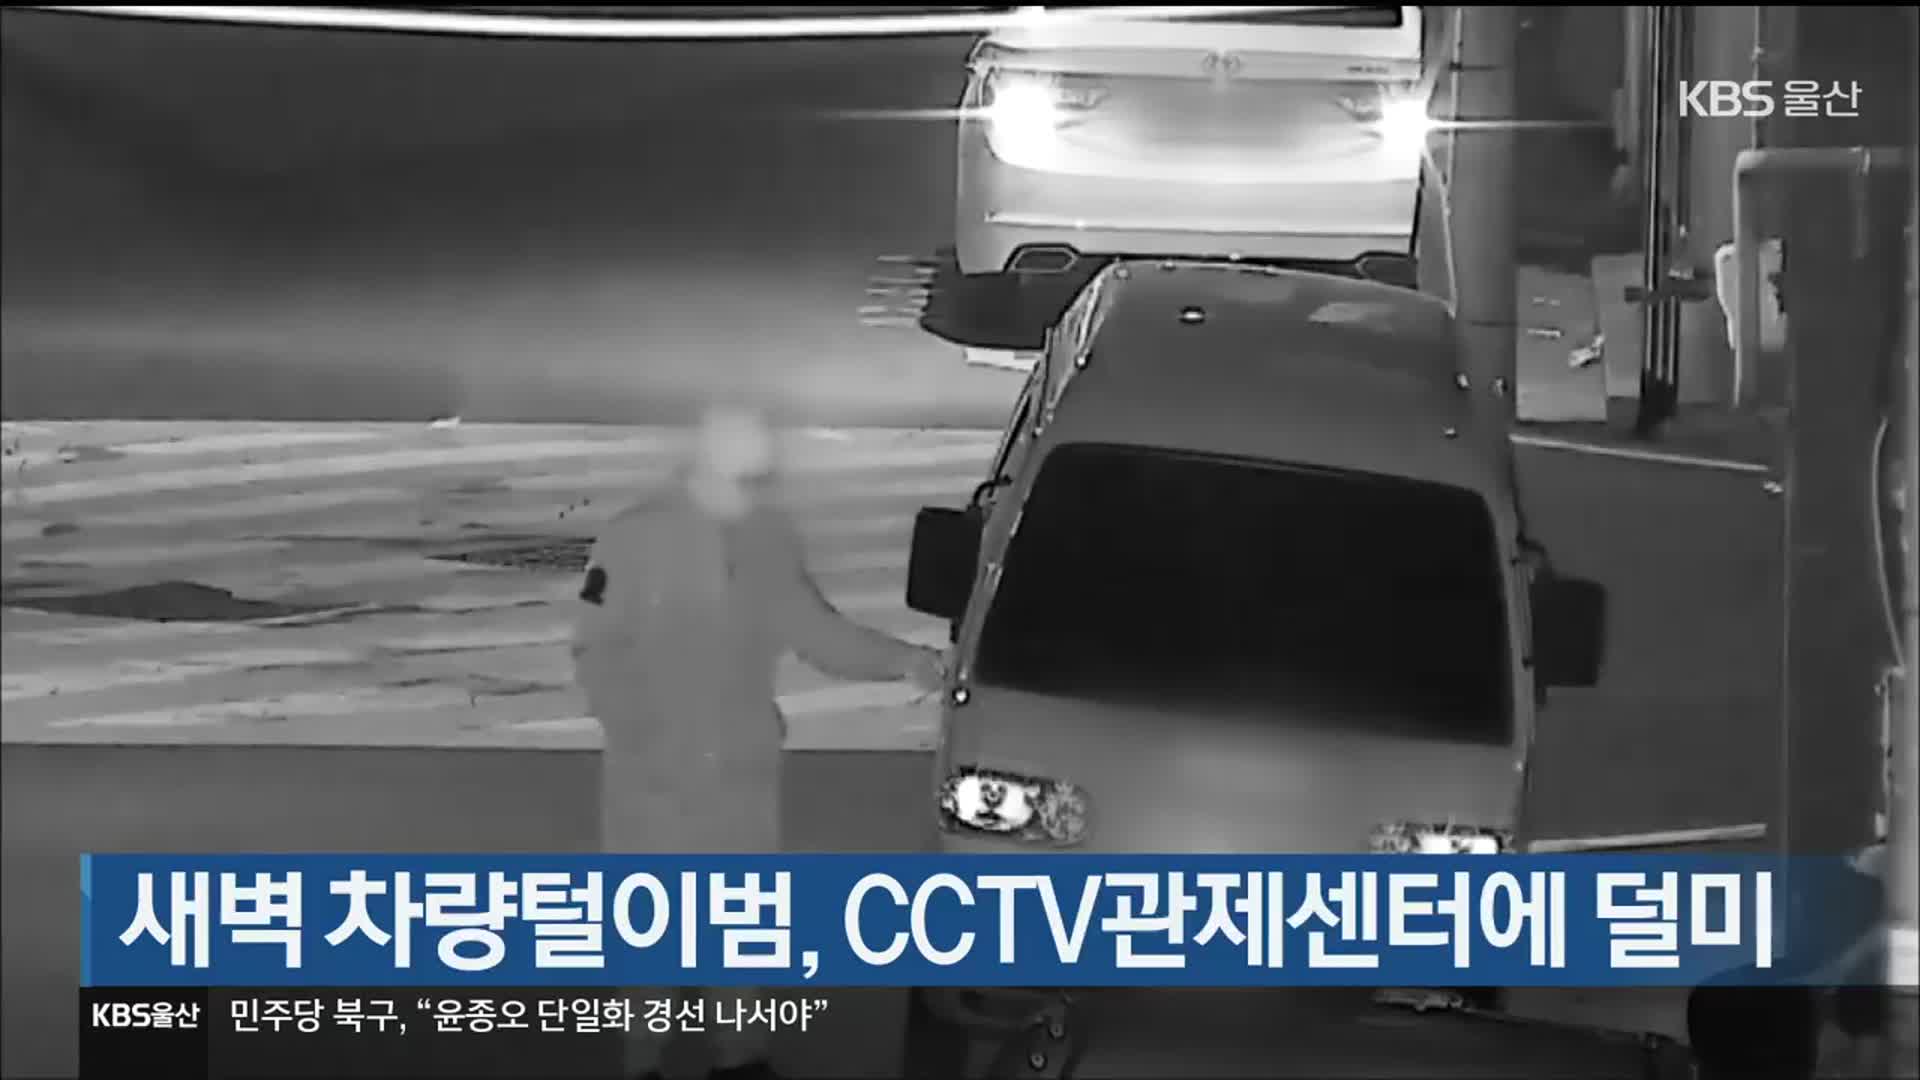 새벽 차량털이범, CCTV관제센터에 덜미